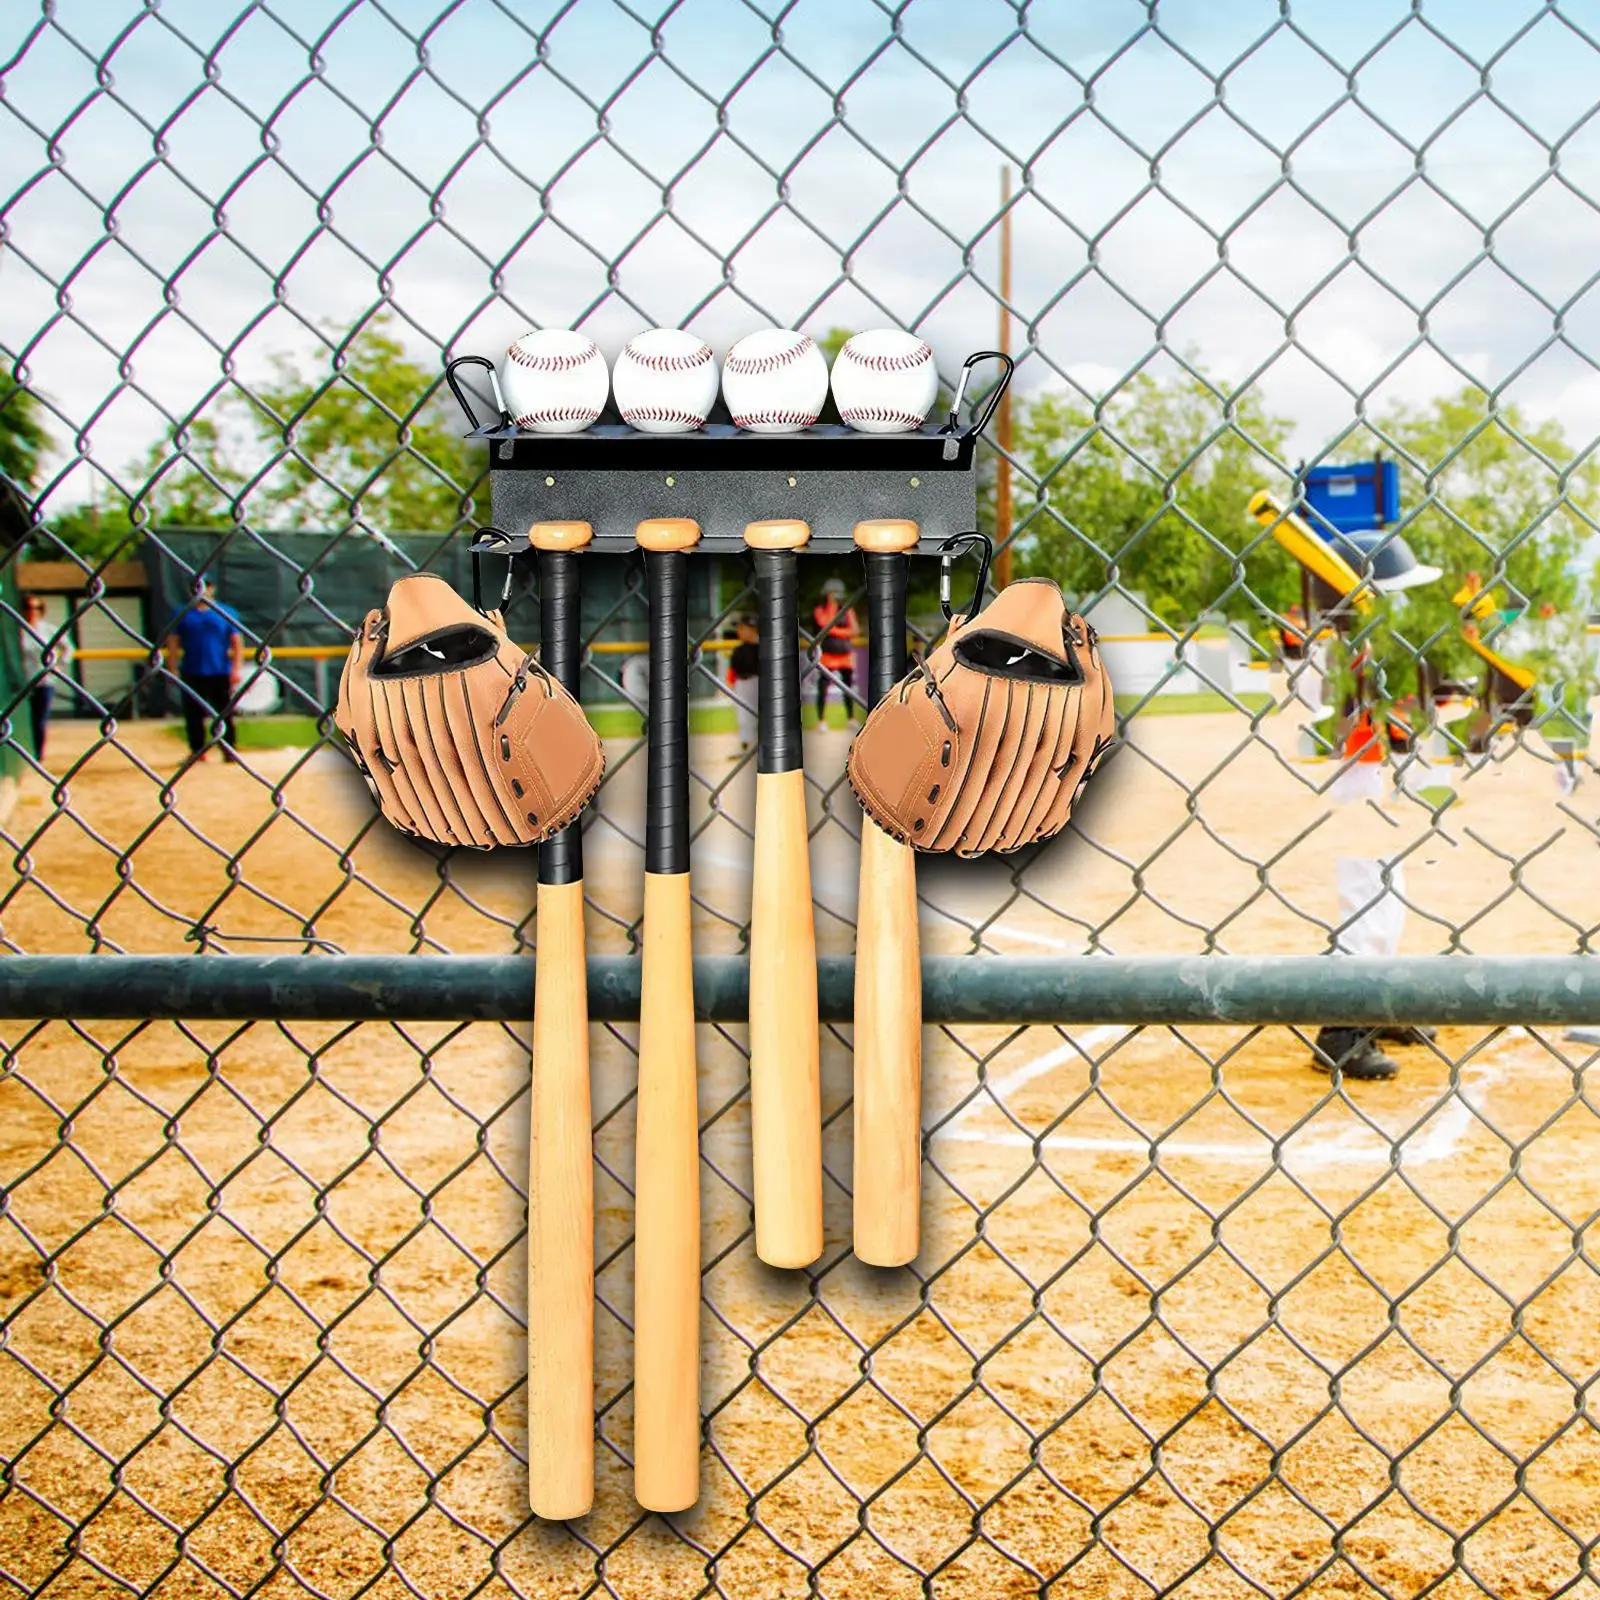 Baseball Bats Shelf Ball Rack Organizer Hold 4 Bats 4 Balls Display Hanger for Sports